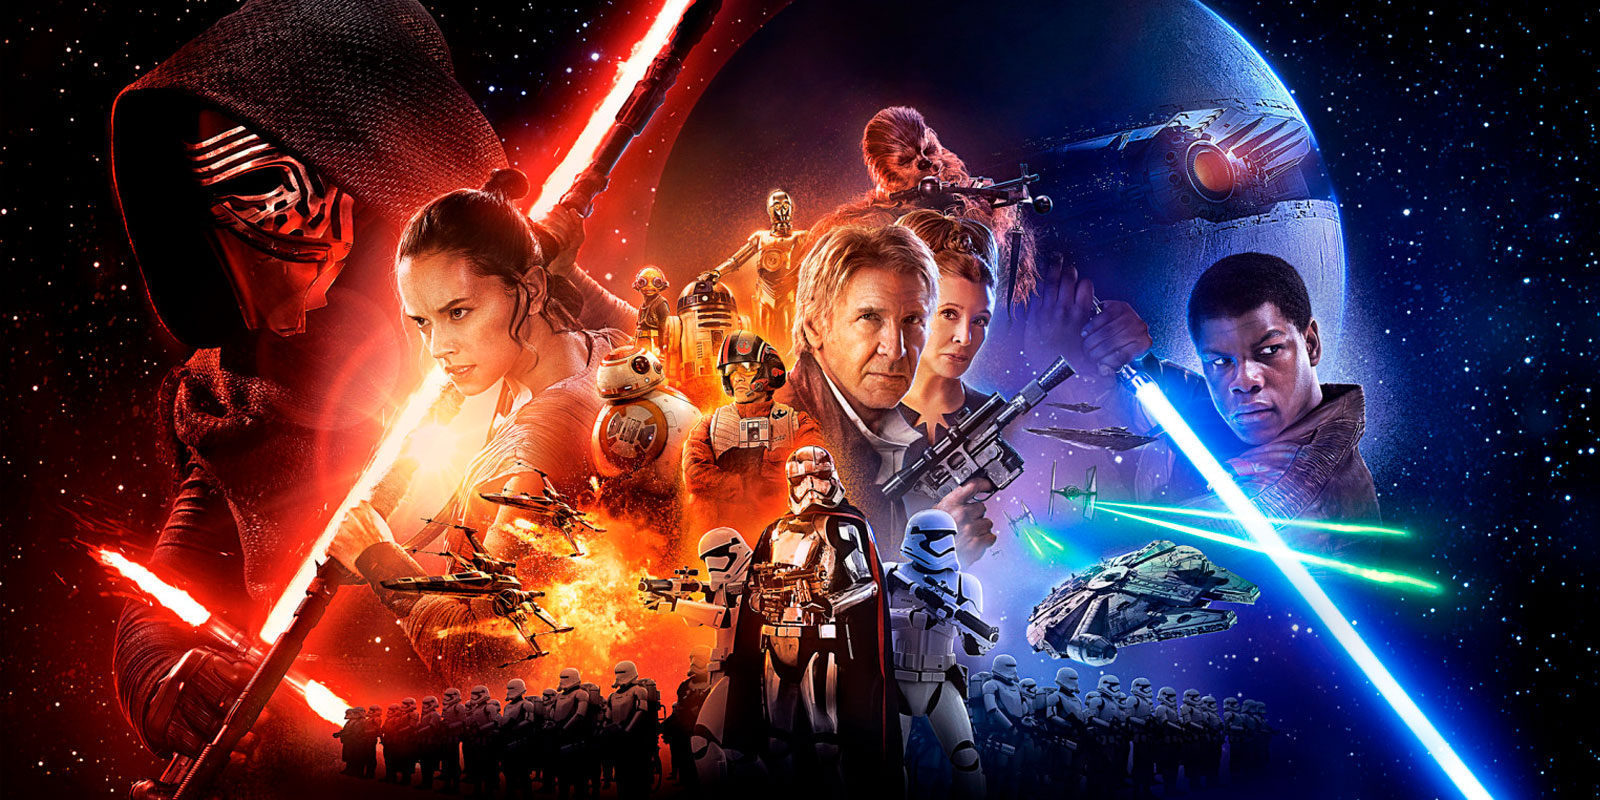 La presidenta de Lucasfilms asegura que Carrie Fisher no aparecerá en 'Star Wars IX'